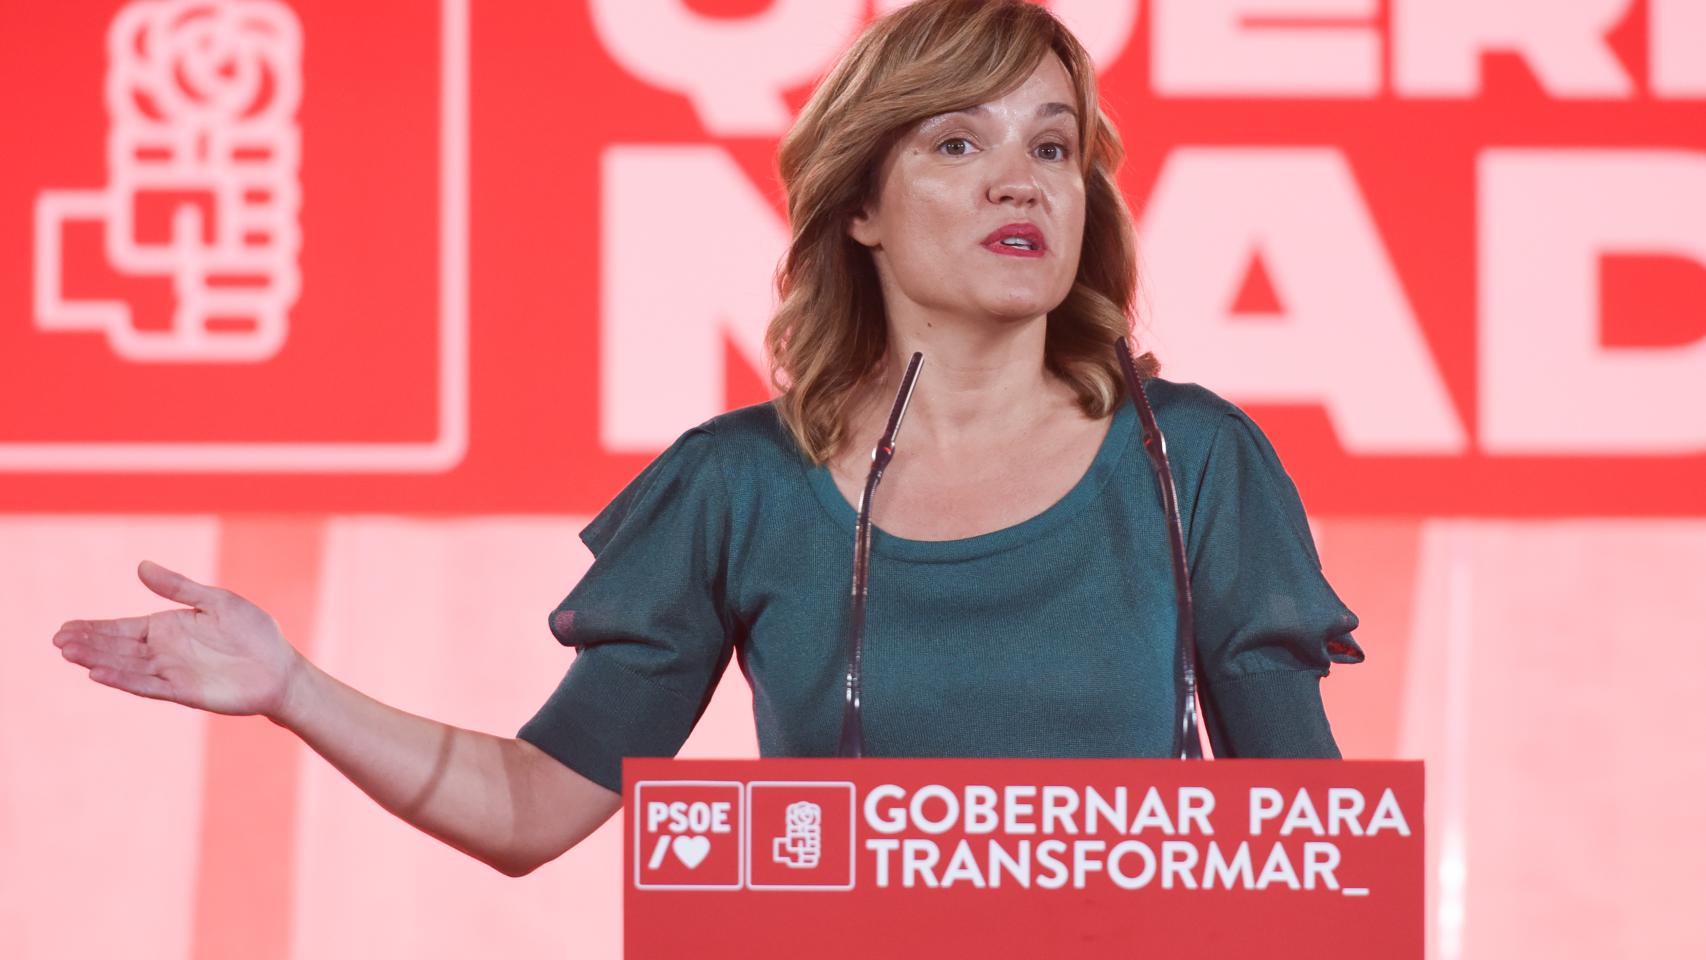 La nueva portavoz del PSOE, la ministra de Educación Pilar Alegría.